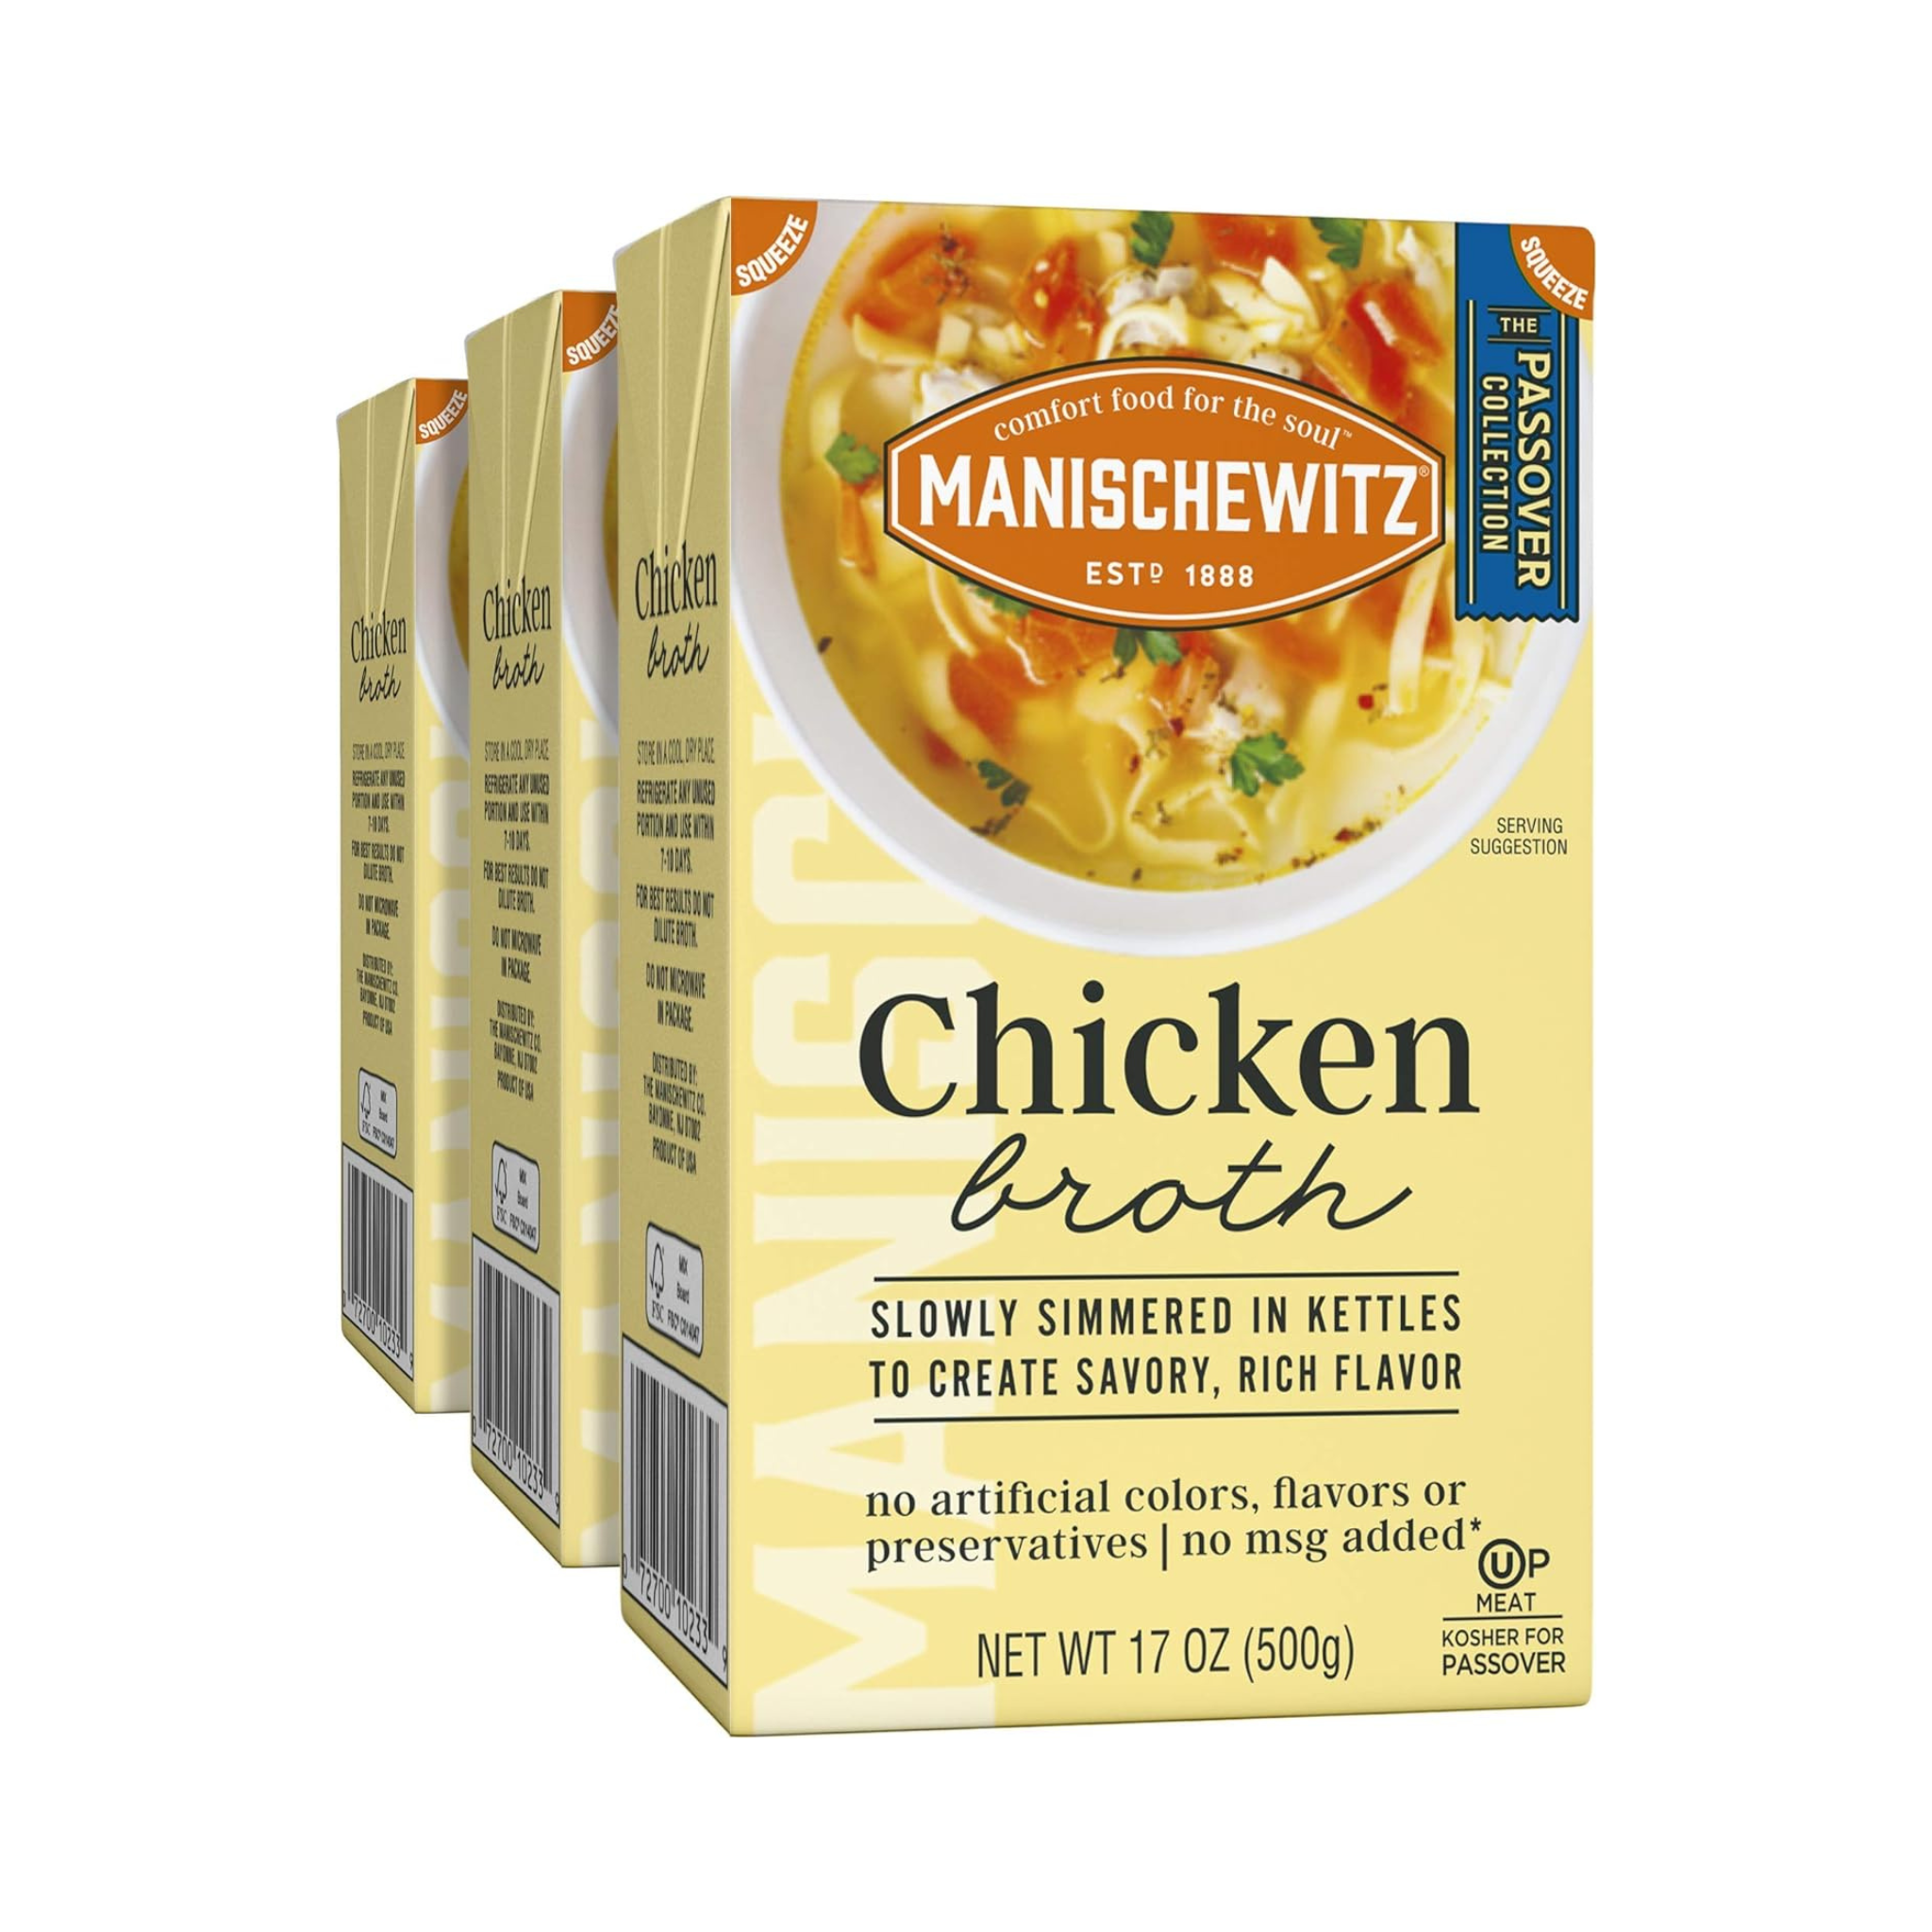 Manischewitz Chicken Broth, OU Passover, 3 Pack